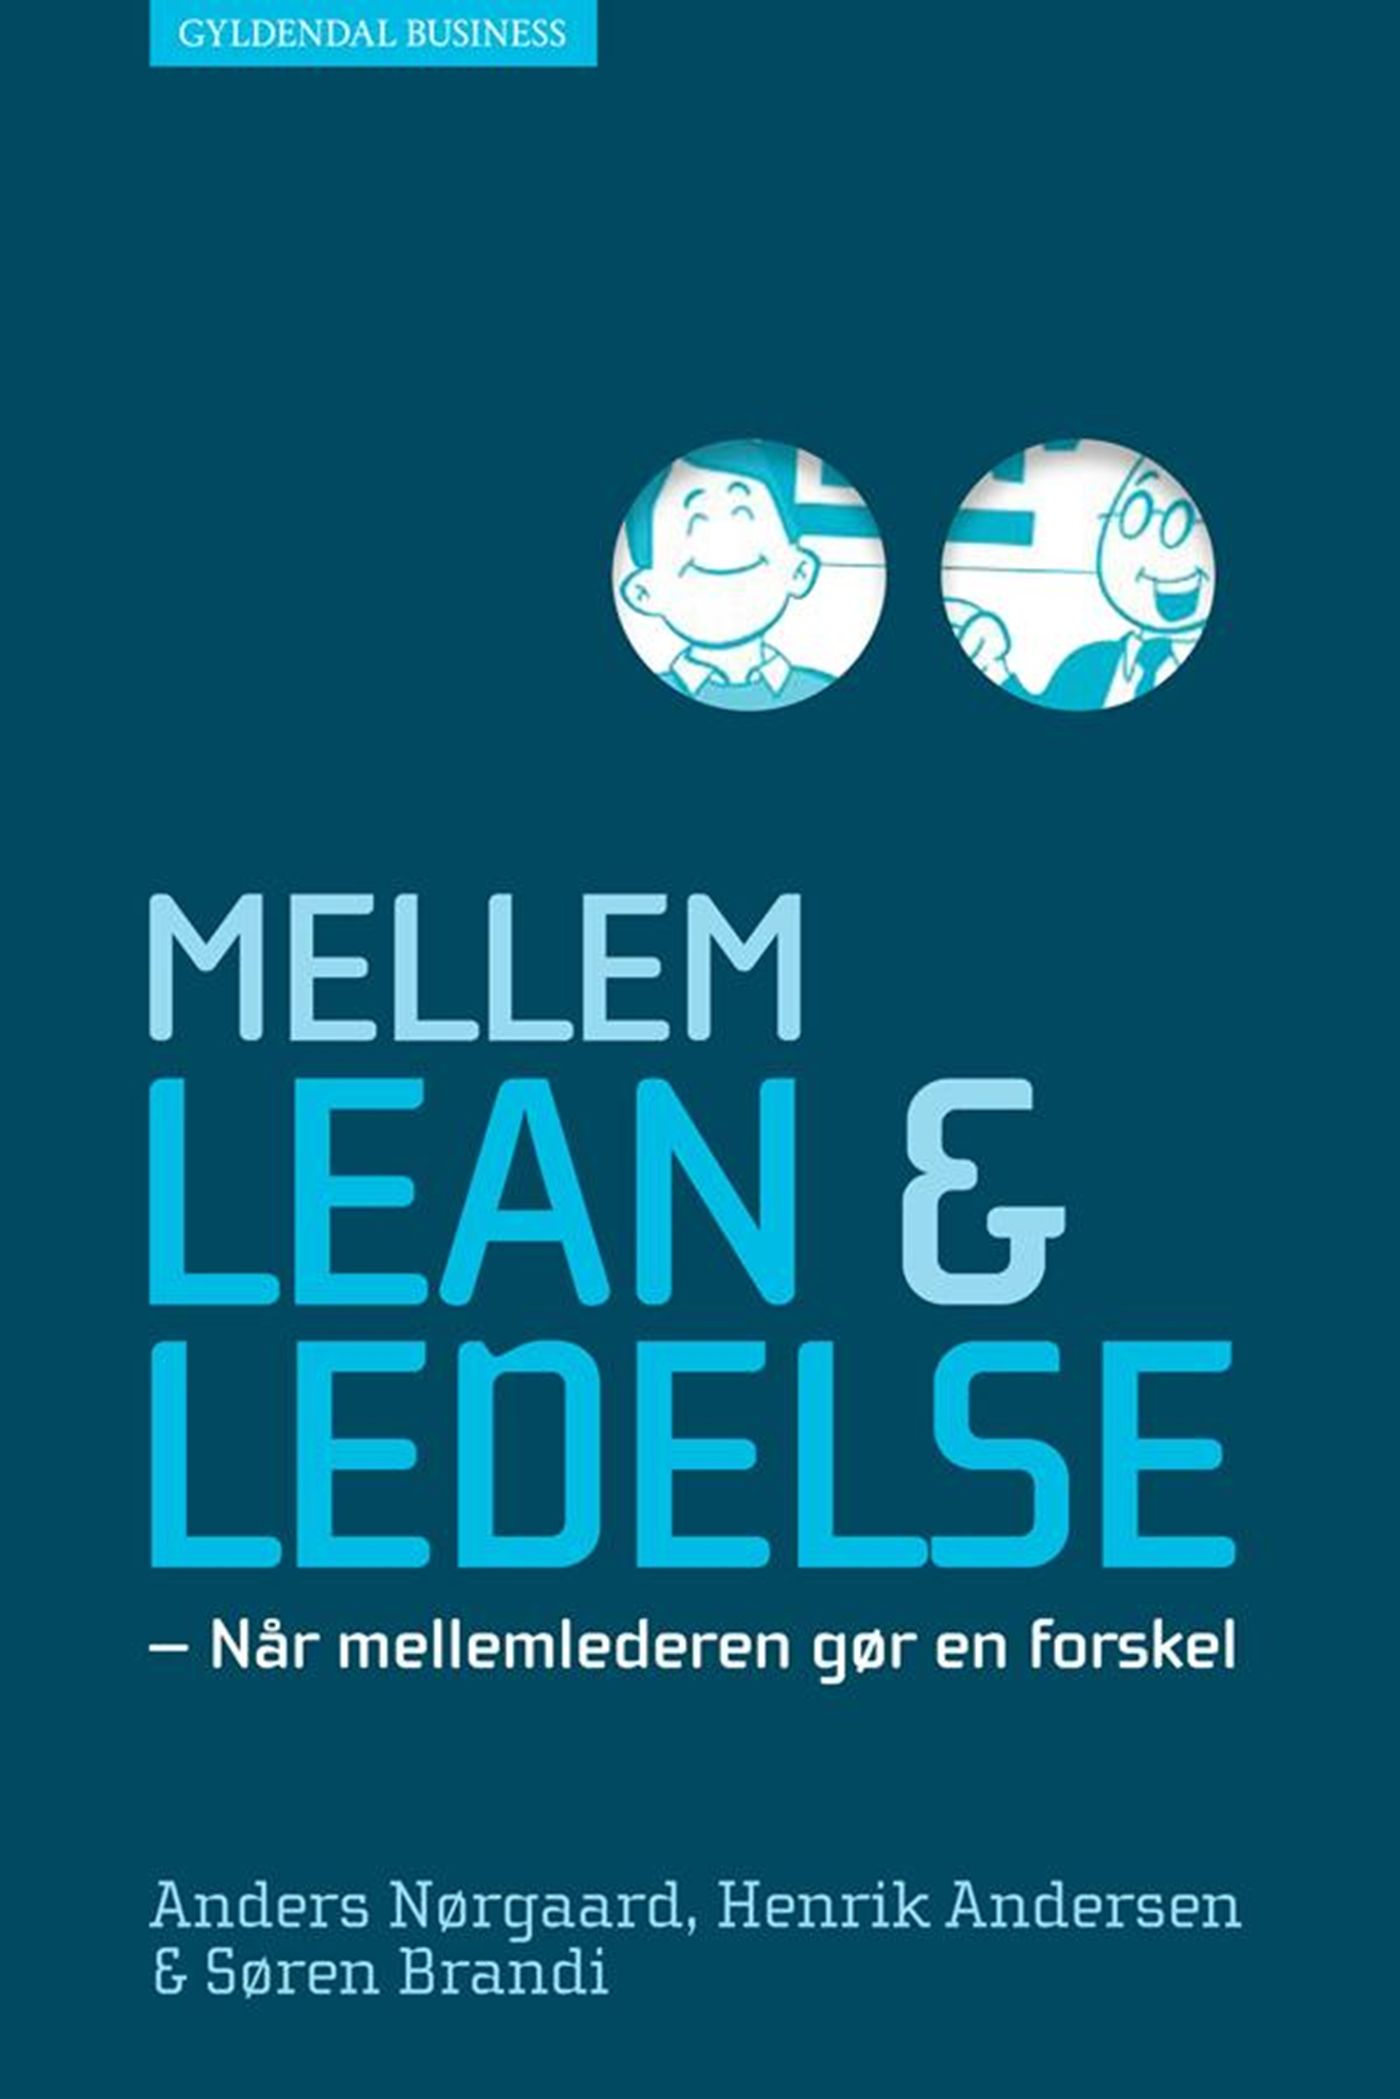 Mellem lean og ledelse, e-bog af Henrik Andersen, Søren Brandi, Anders Nørgaard